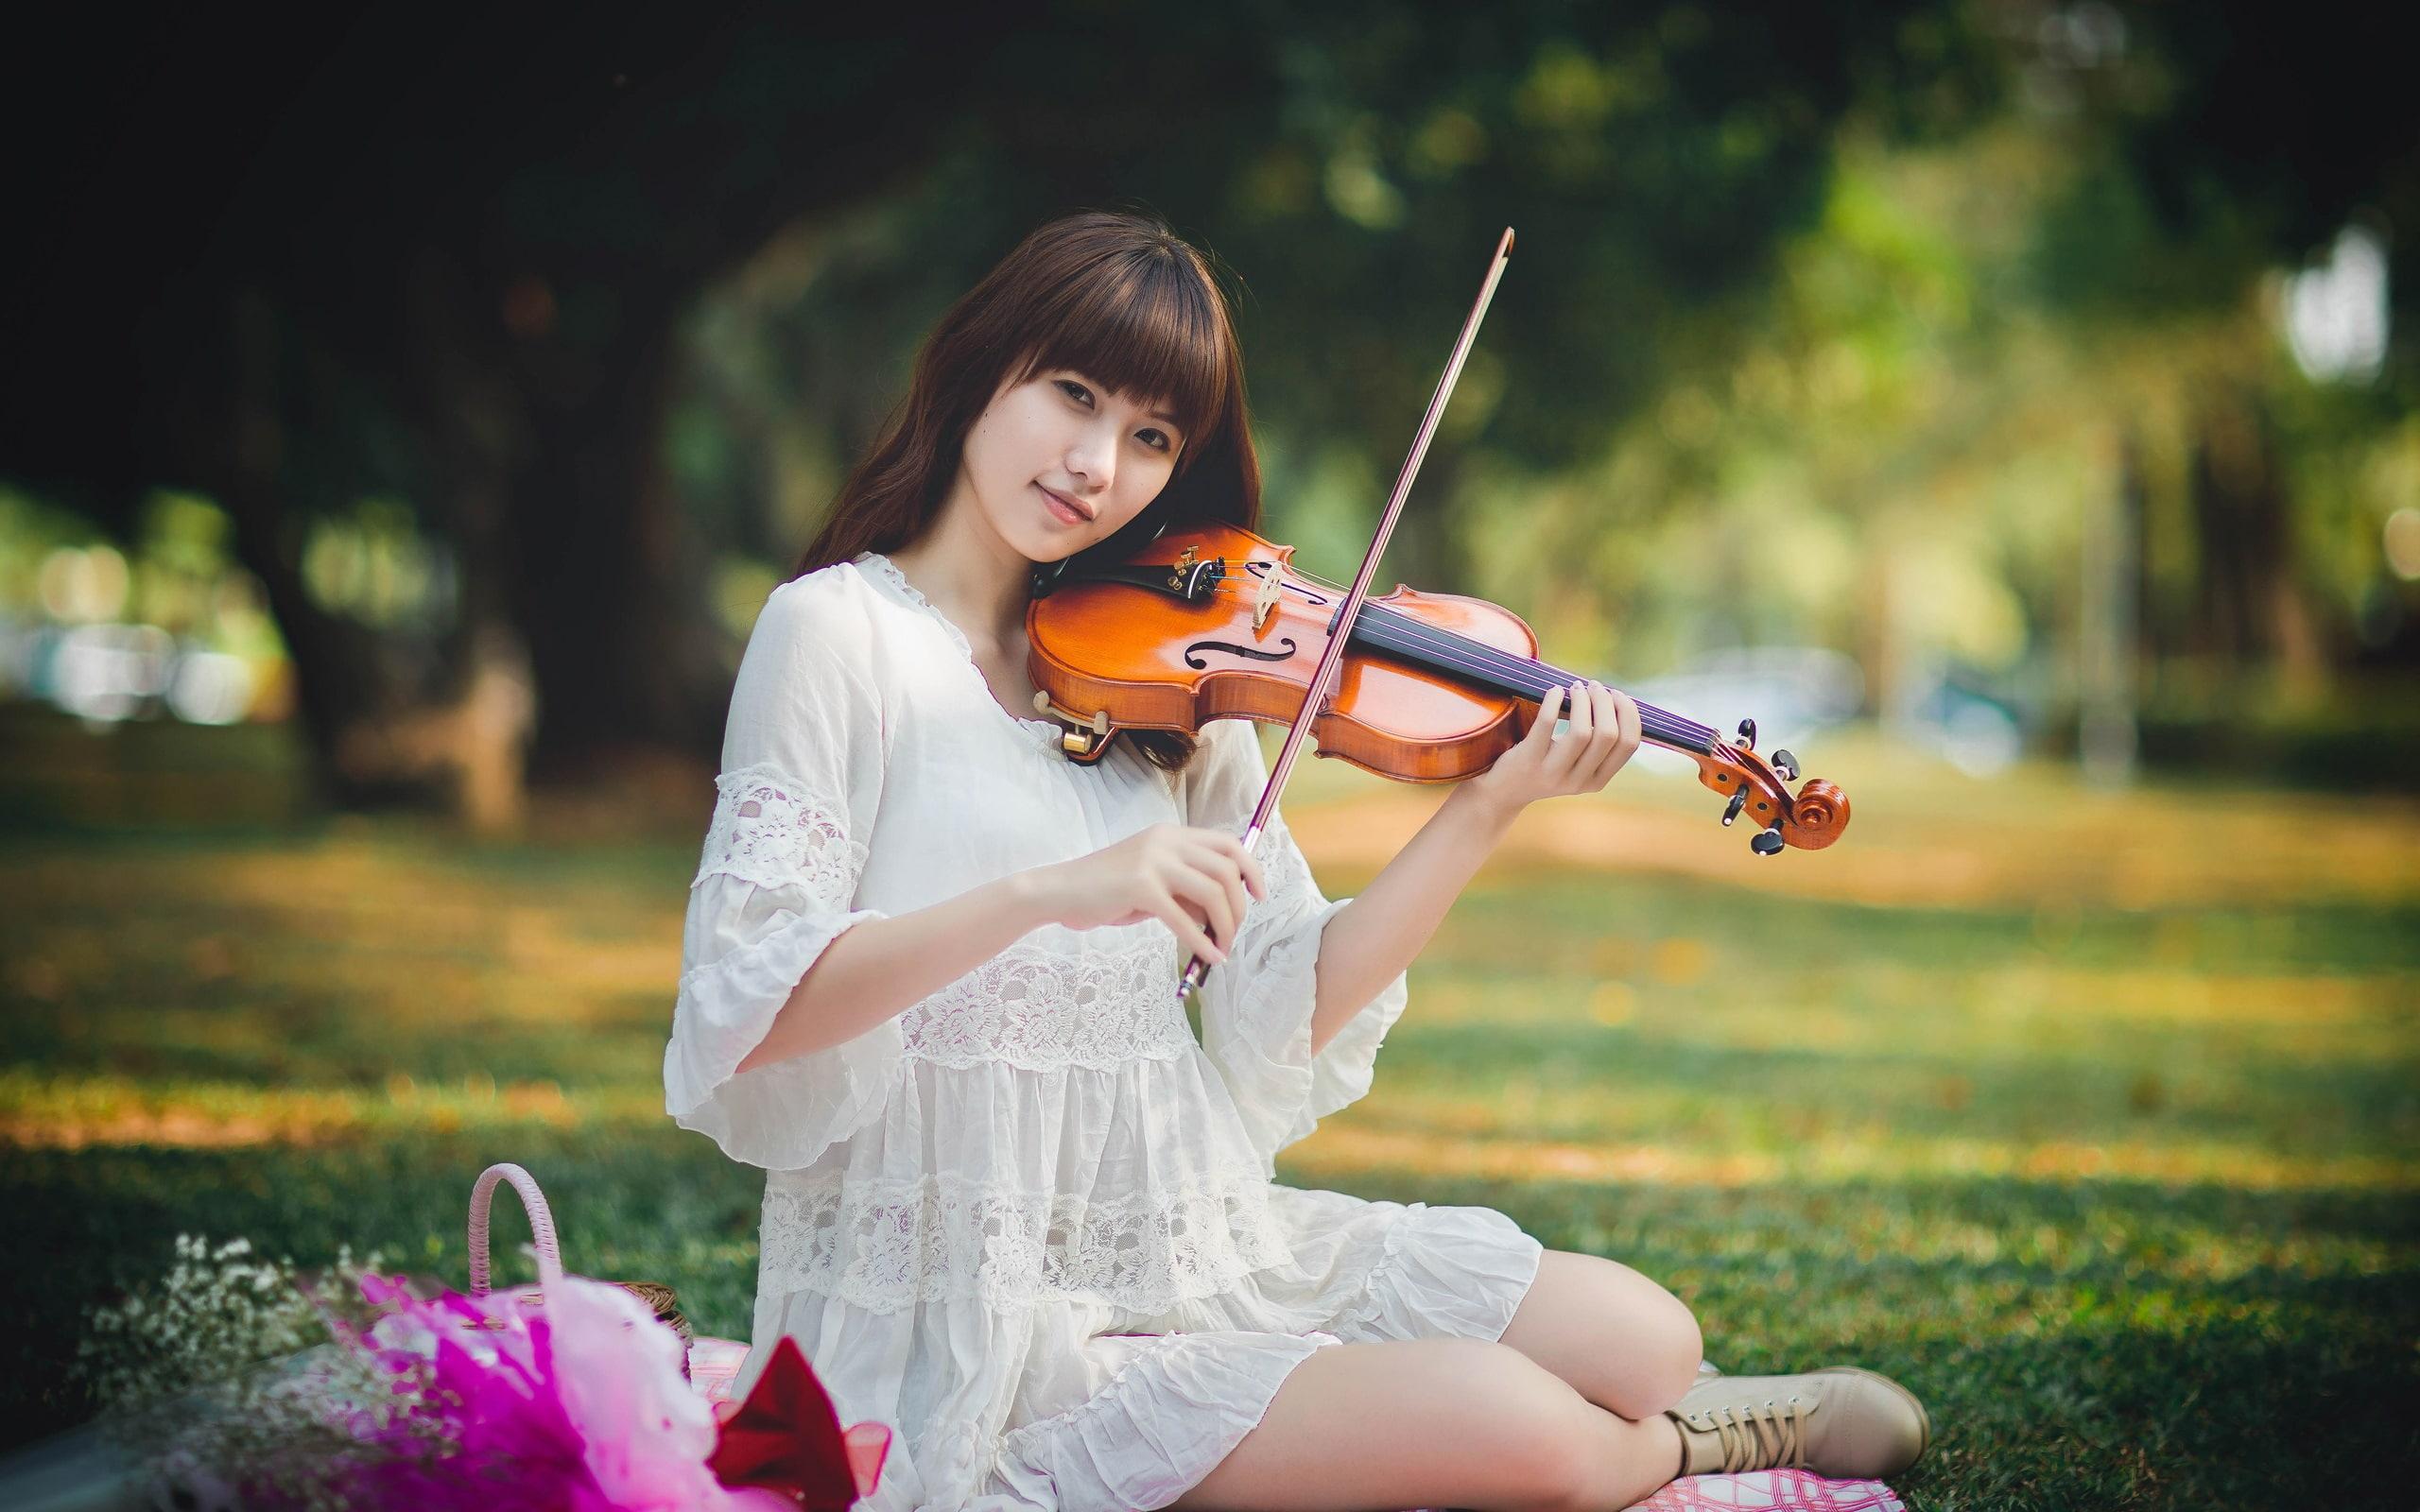 HD wallpaper: Music girl, Asian, violin